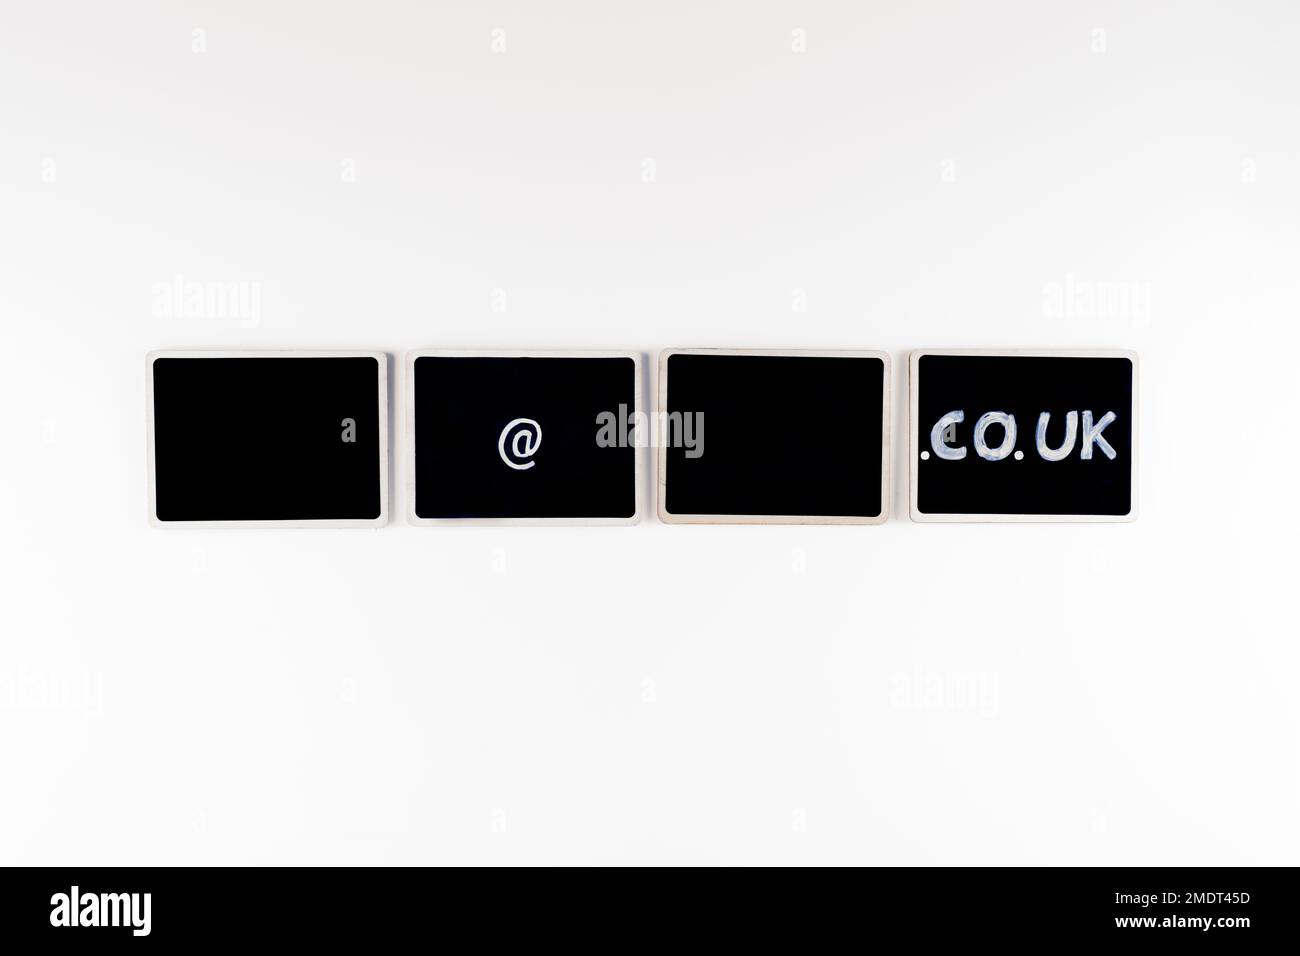 Regno Unito vuoto email address template mock up corproate business o concetto privato su lavagne in gesso nero isolate su uno sfondo bianco Foto Stock